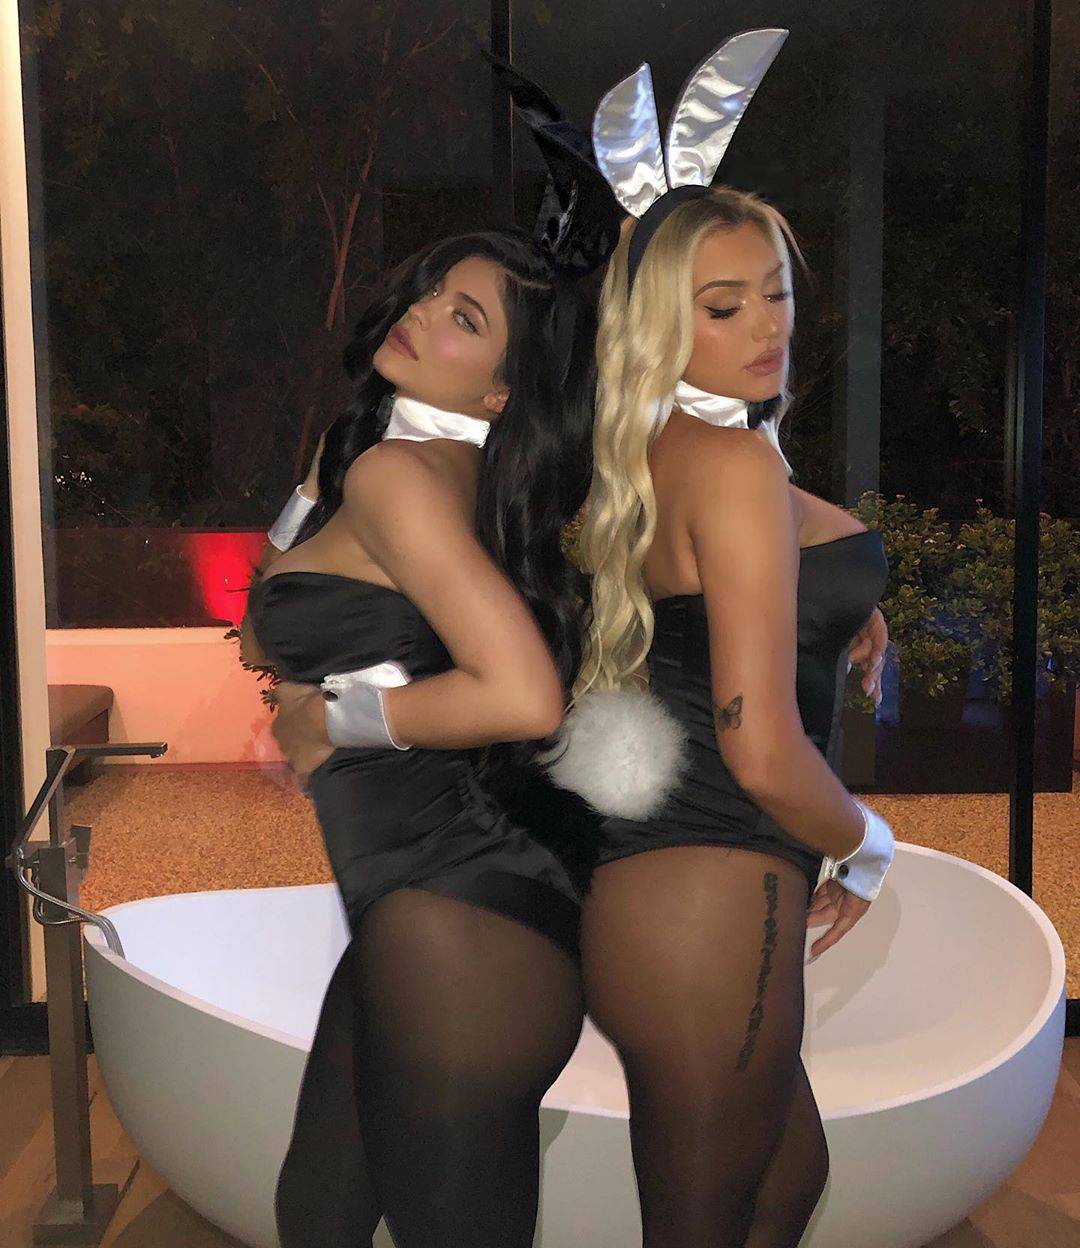 Kylie zasjala kao Playboyeva zečica u atraktivnom kostimu